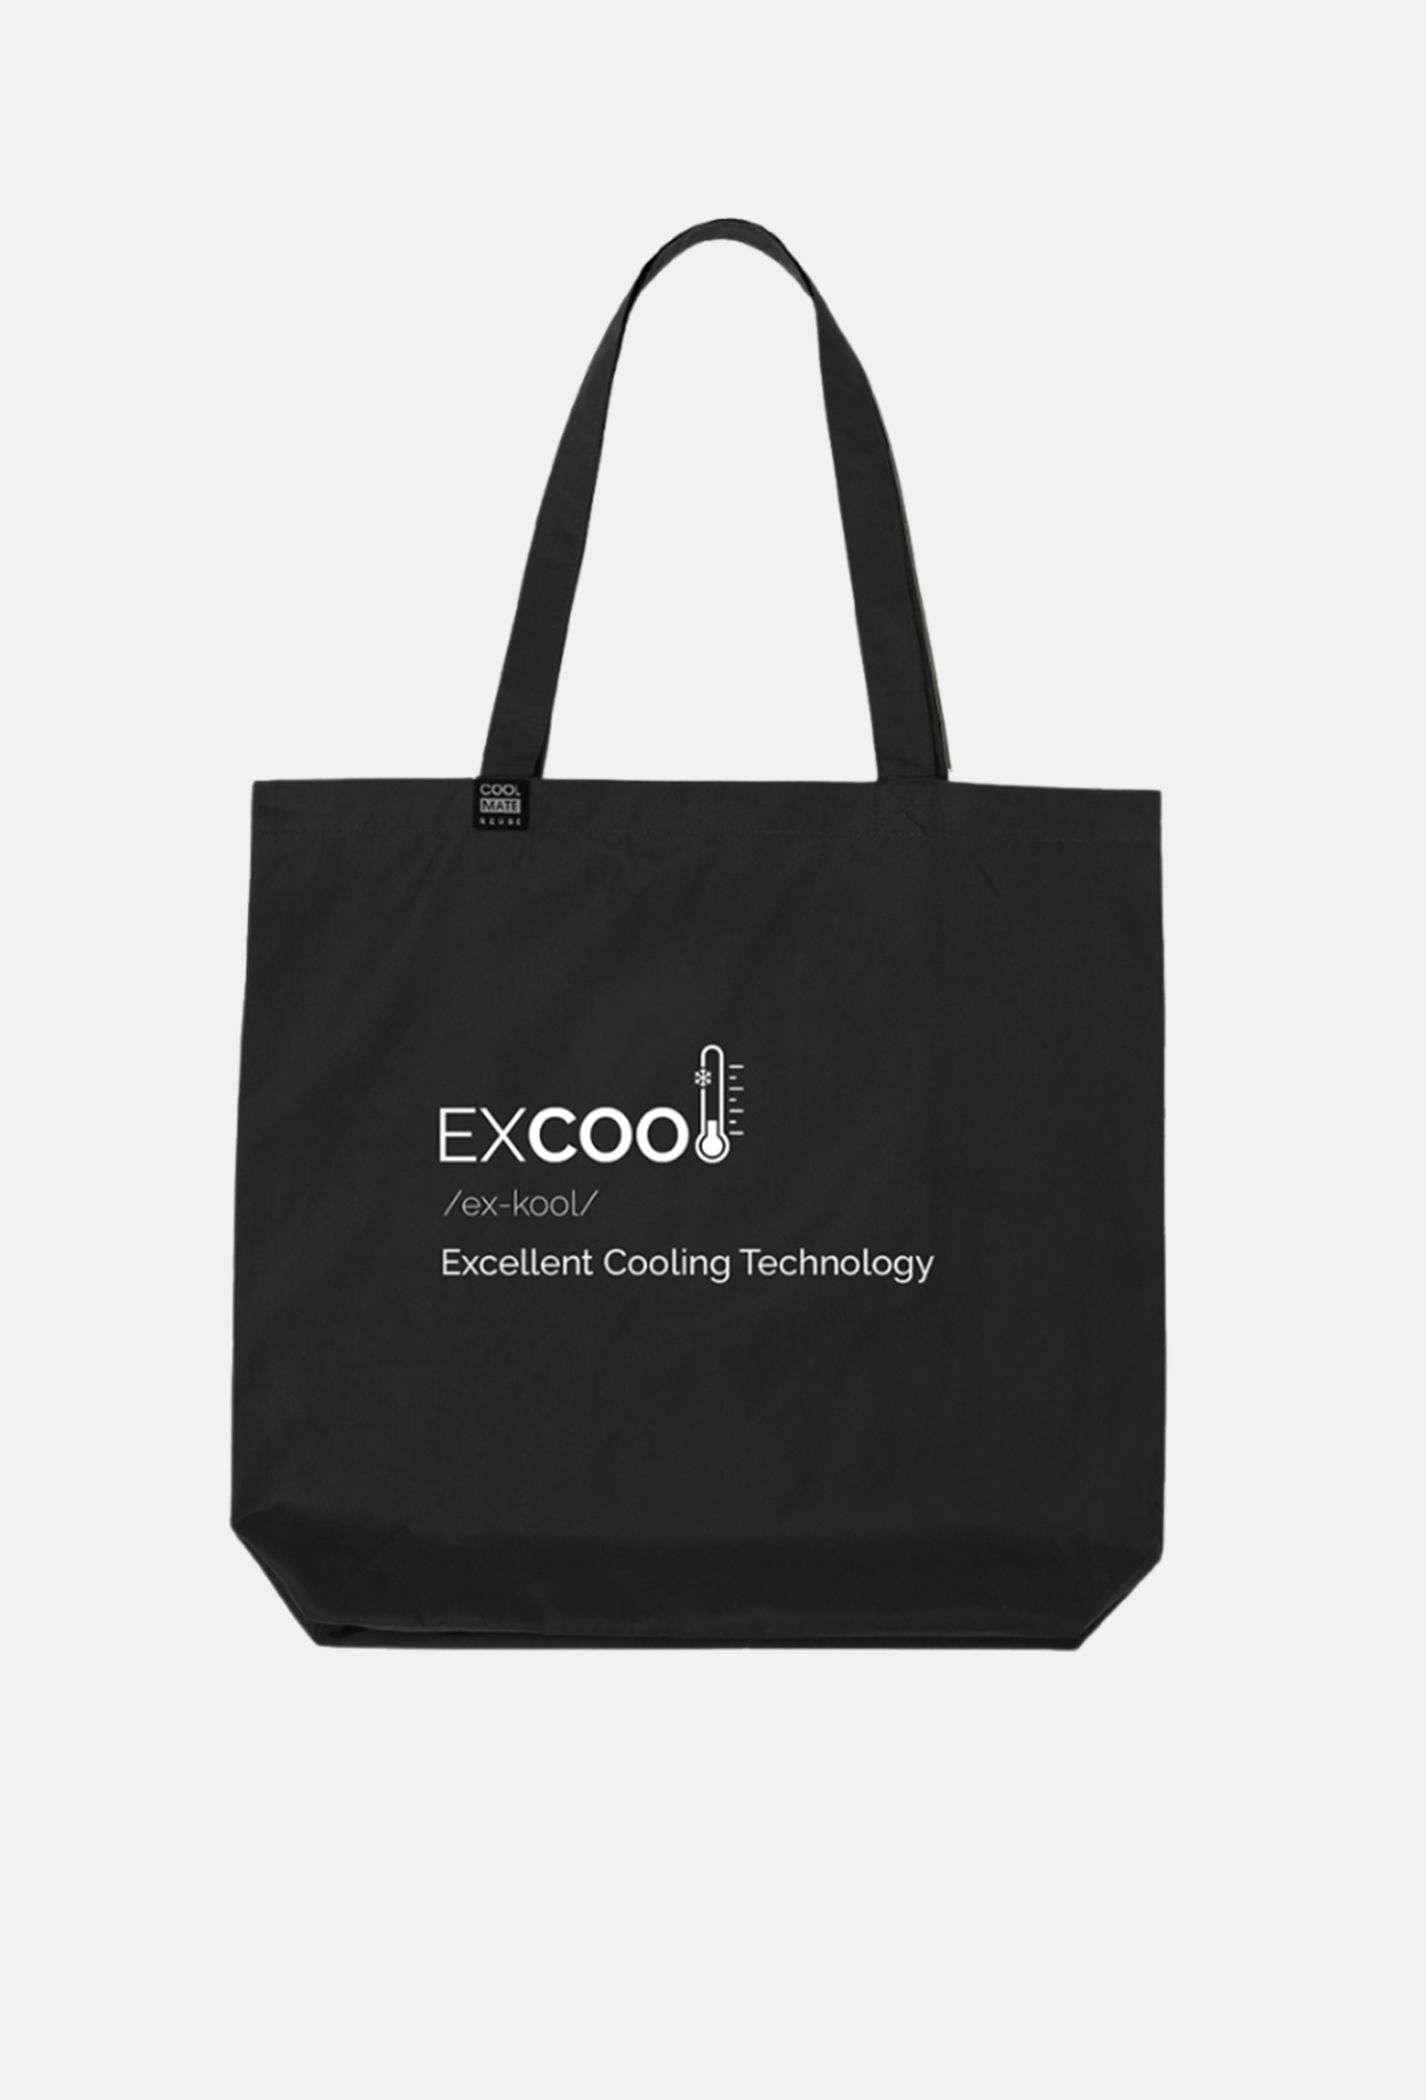 COOLMATE – Túi Clean Bag in Excool thời trang, tiện lợi (màu ngẫu nhiên) từ Coolmate